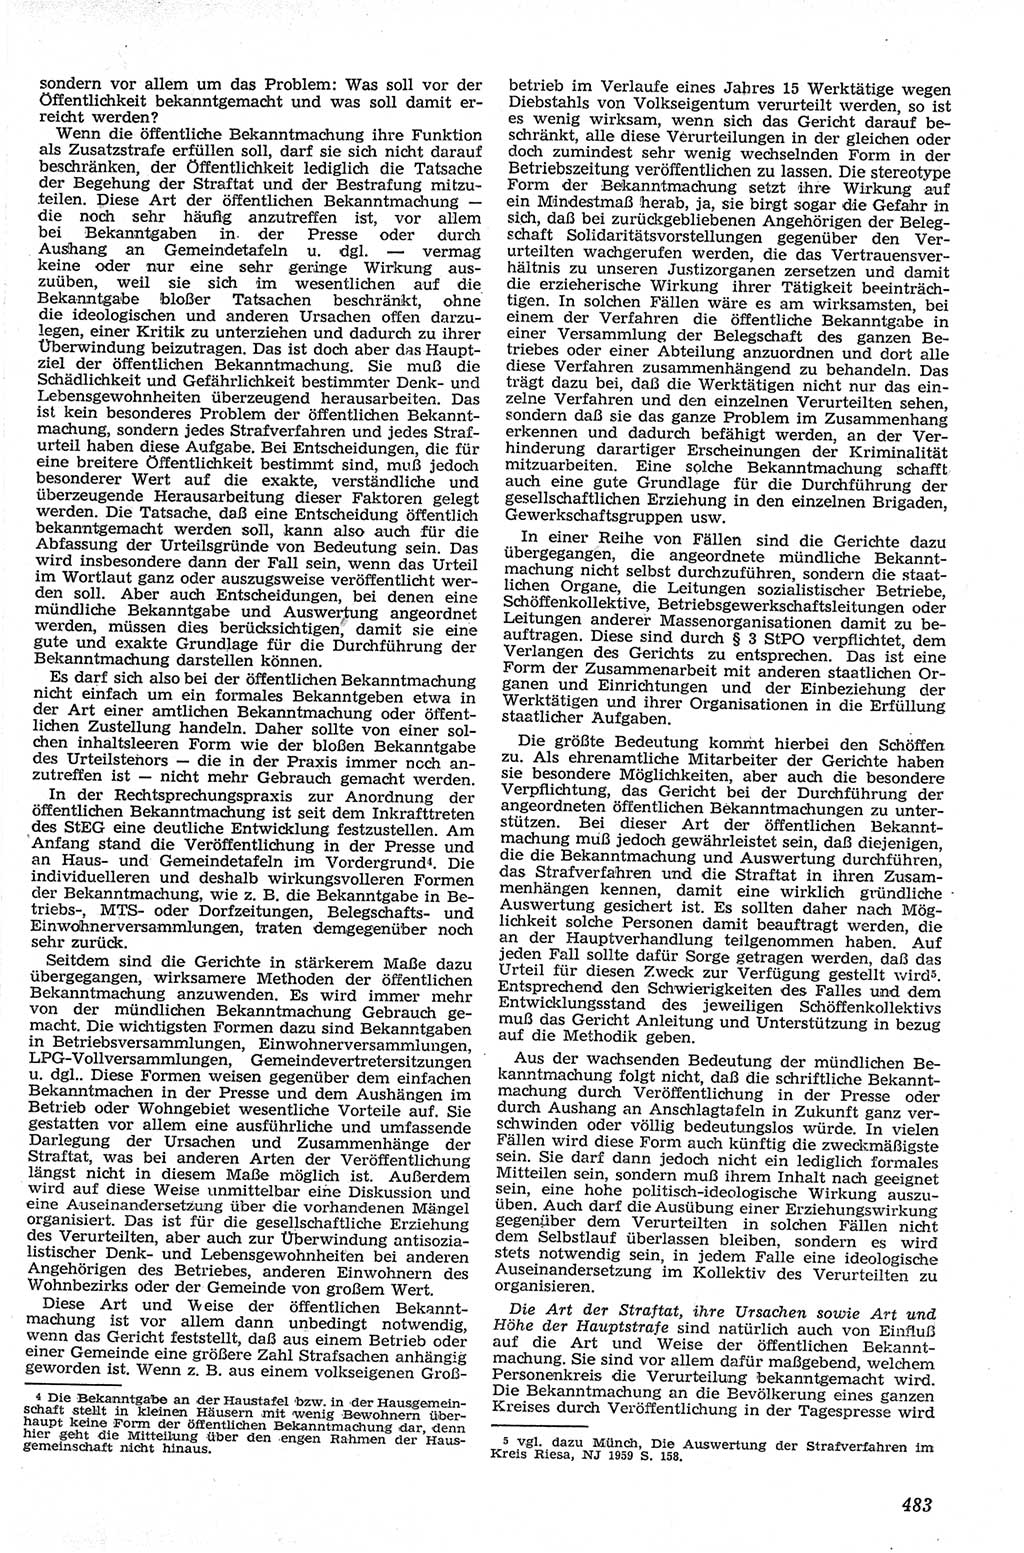 Neue Justiz (NJ), Zeitschrift für Recht und Rechtswissenschaft [Deutsche Demokratische Republik (DDR)], 13. Jahrgang 1959, Seite 483 (NJ DDR 1959, S. 483)